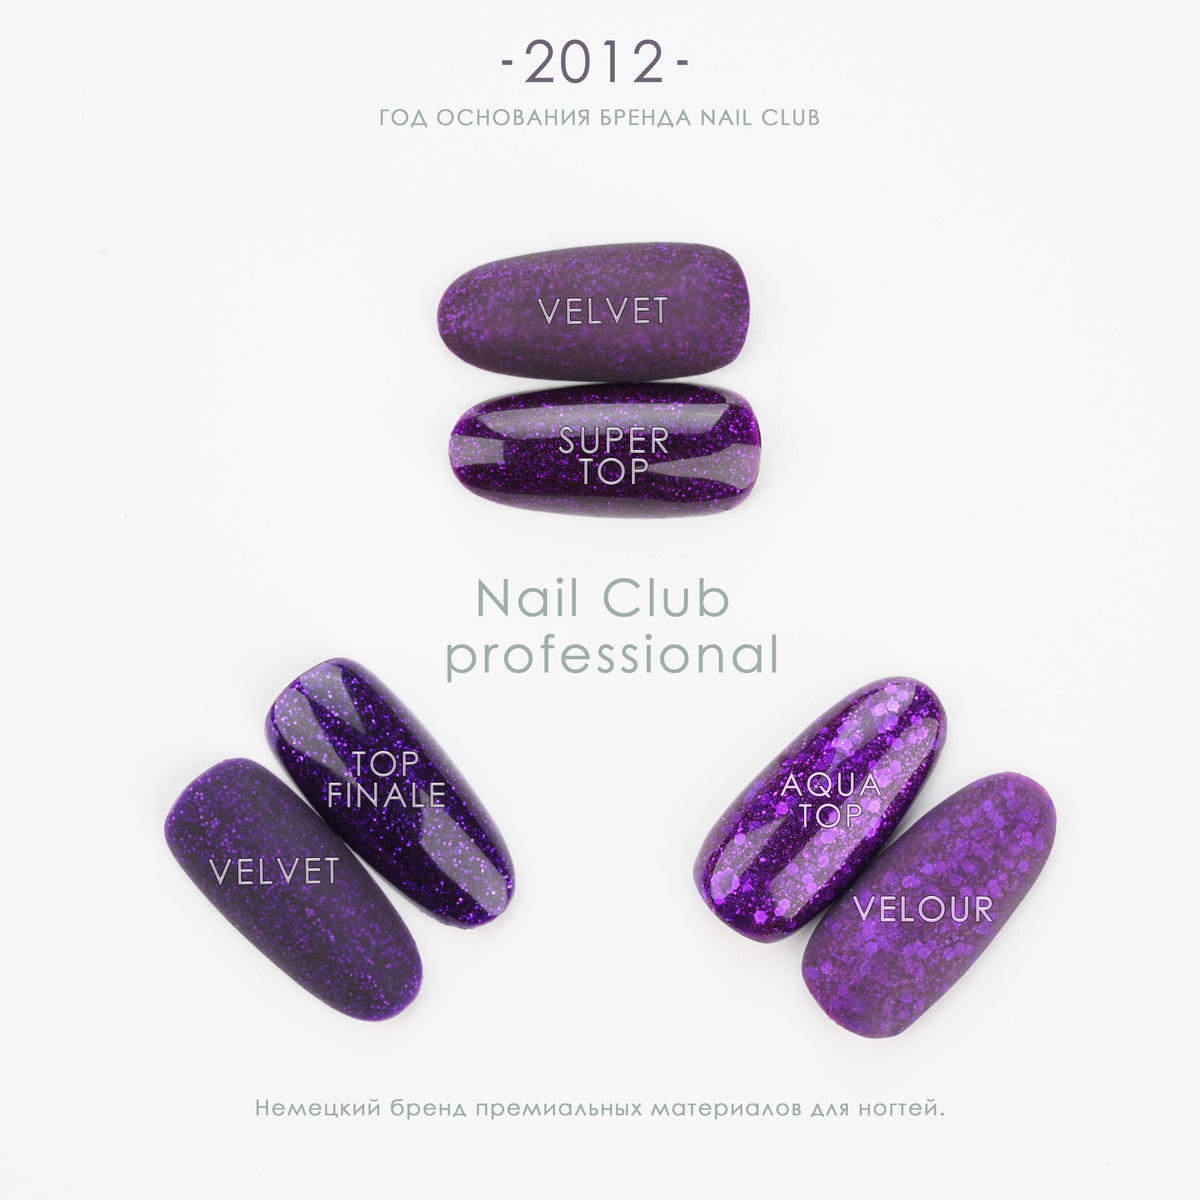 Топы для ногтей от немецкого бренда Nail Club professional